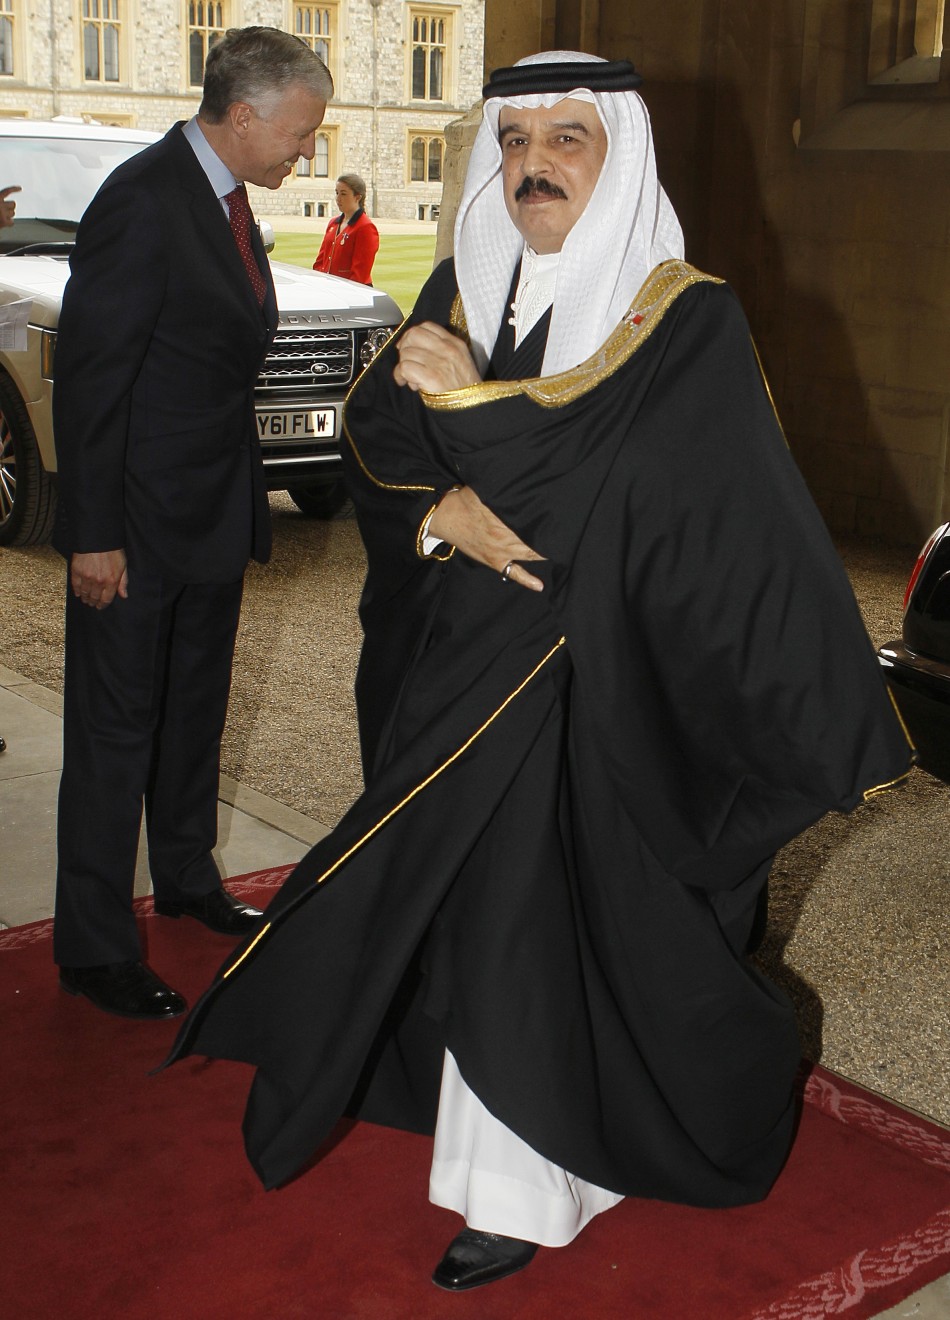 King of Bahrain